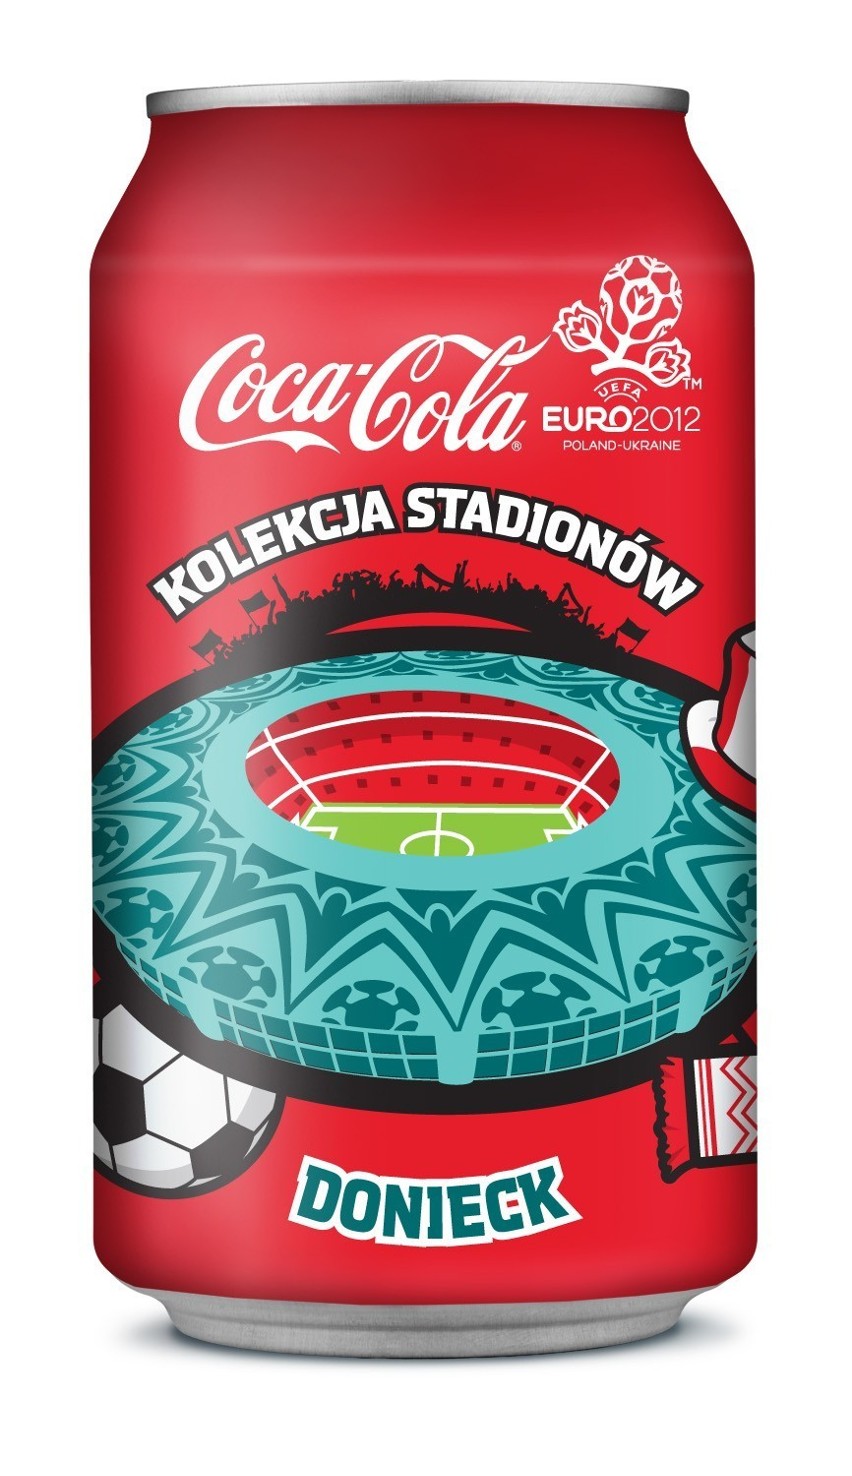 Stadion w Doniecku na puszczce Coca Coli